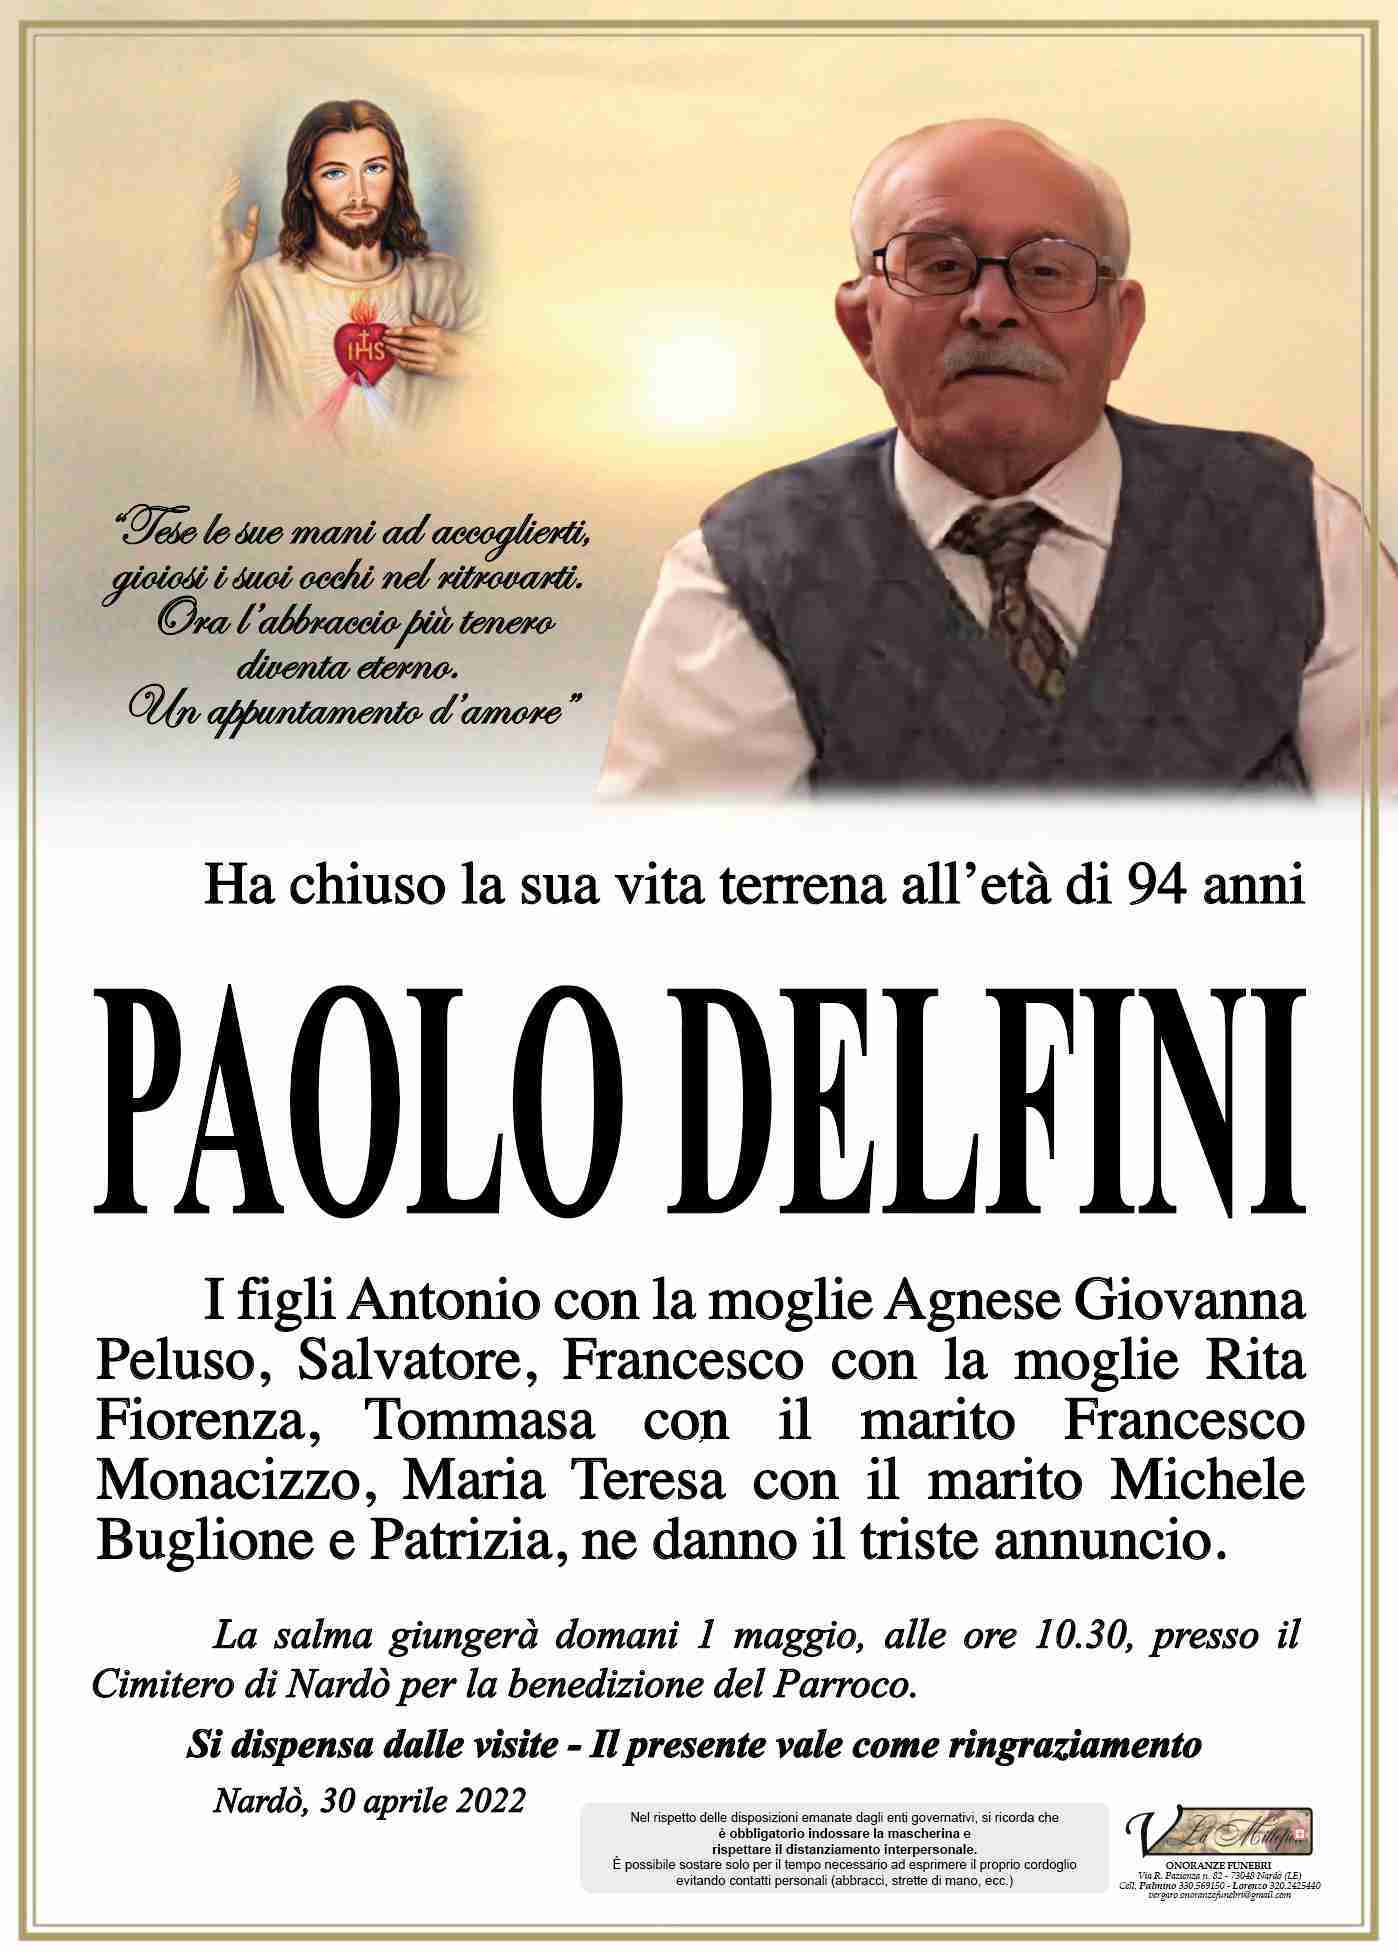 Paolo Delfini